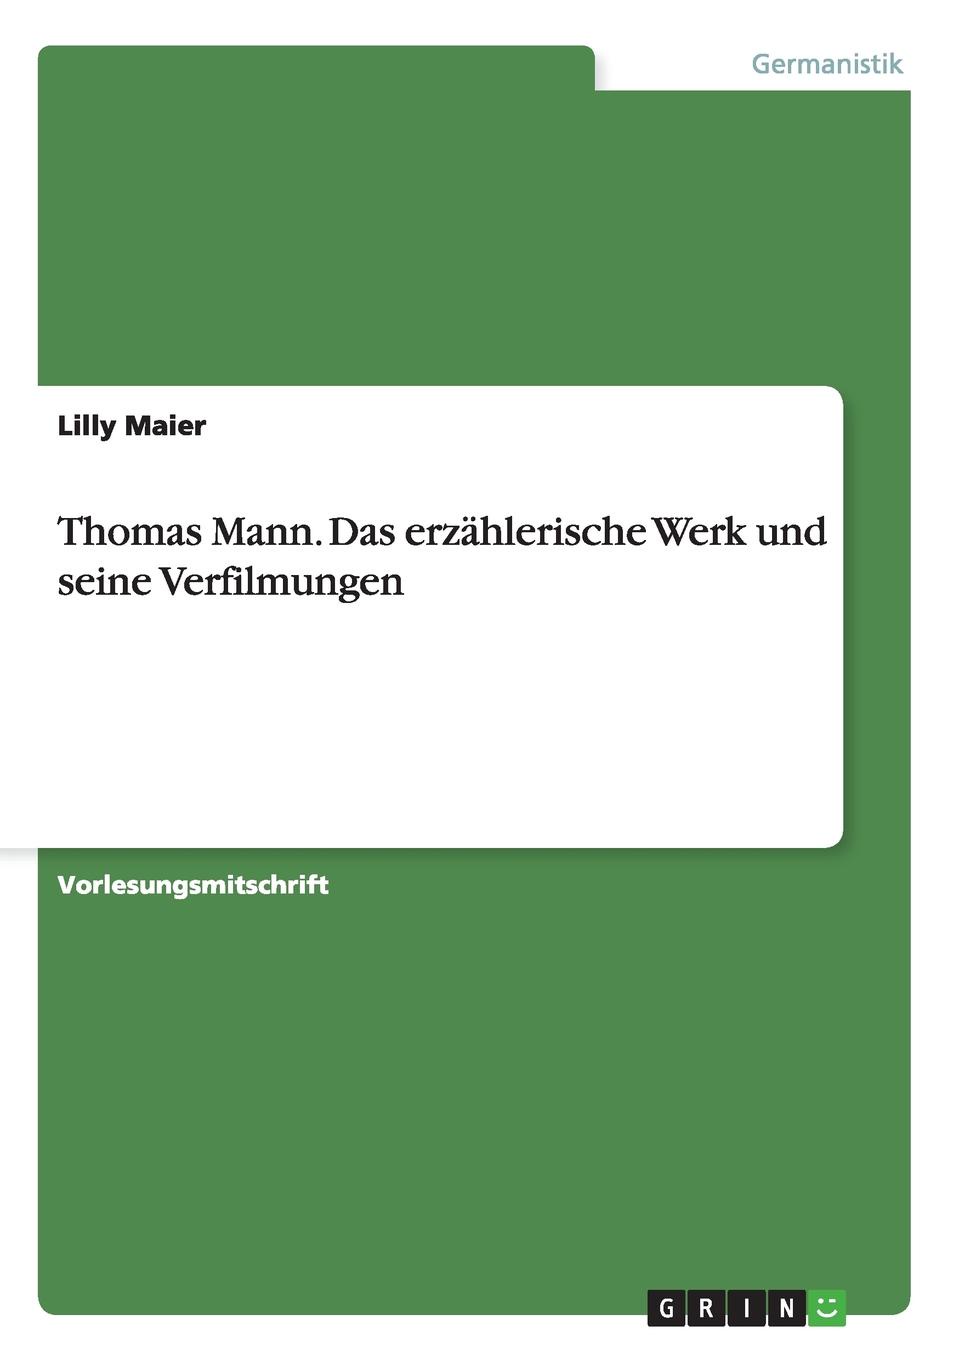 Thomas Mann. Das erzahlerische Werk und seine Verfilmungen